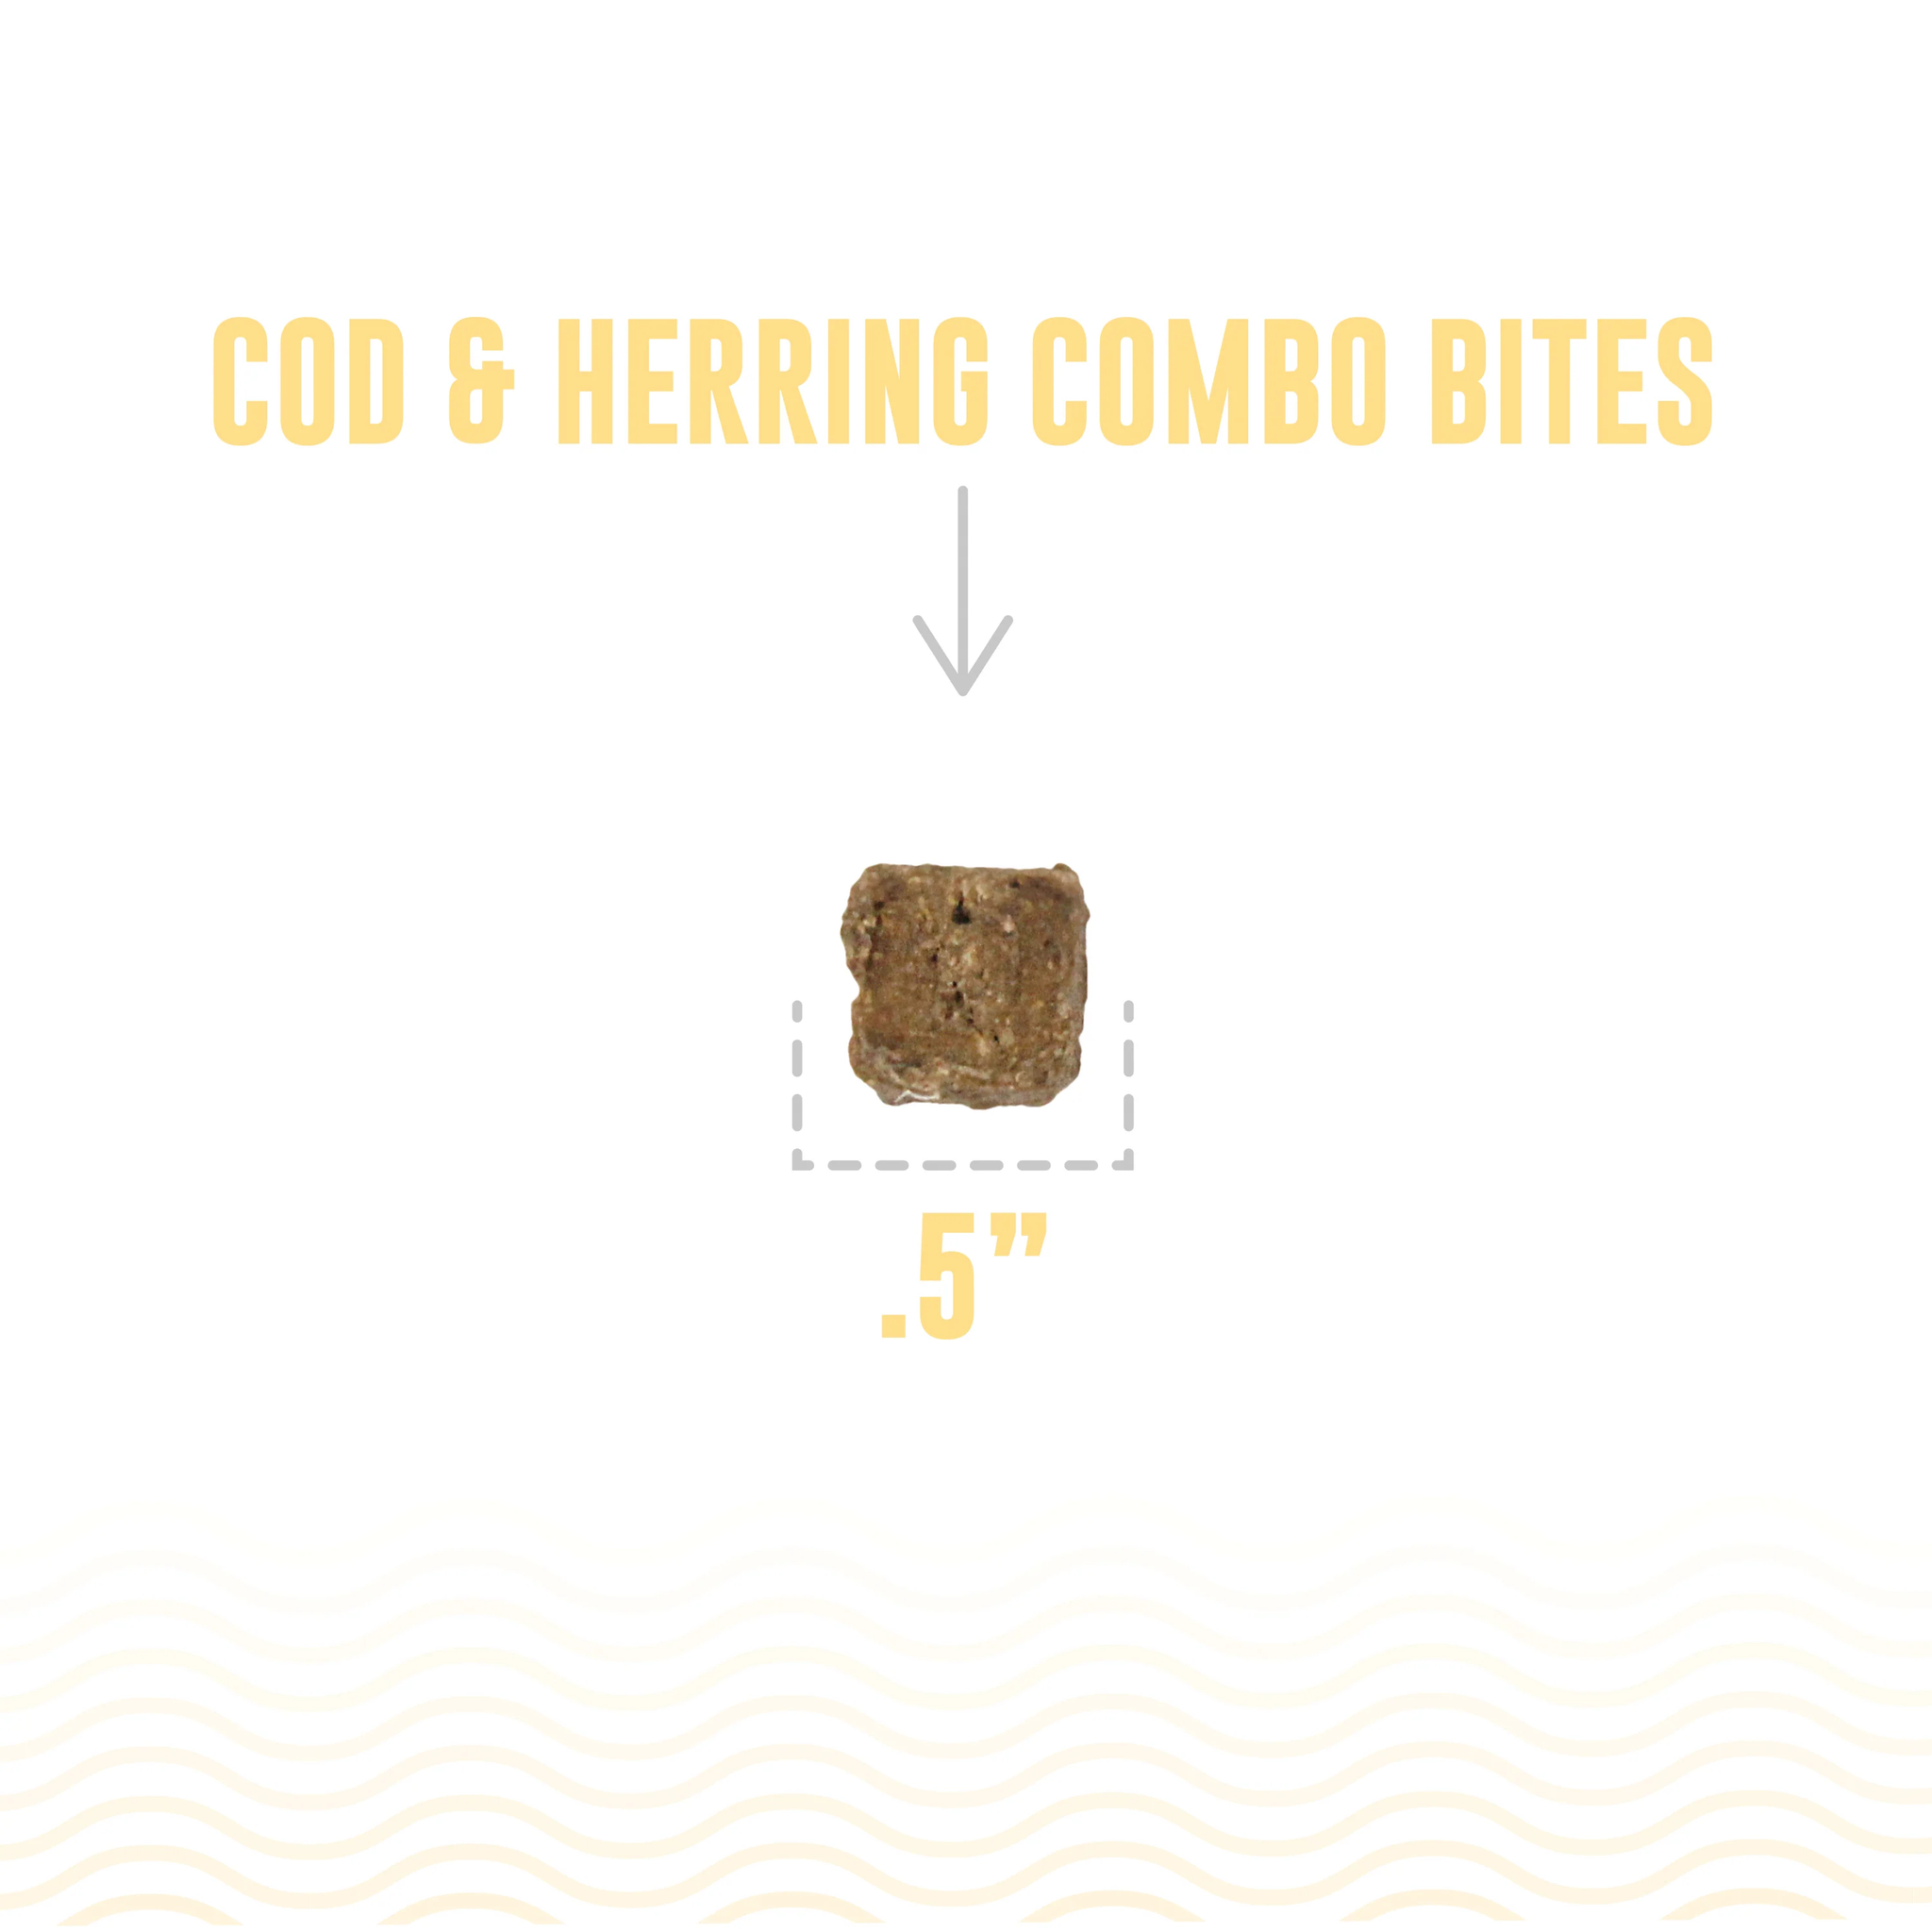 Icelandic Cod & Herring Combo Bites 3oz